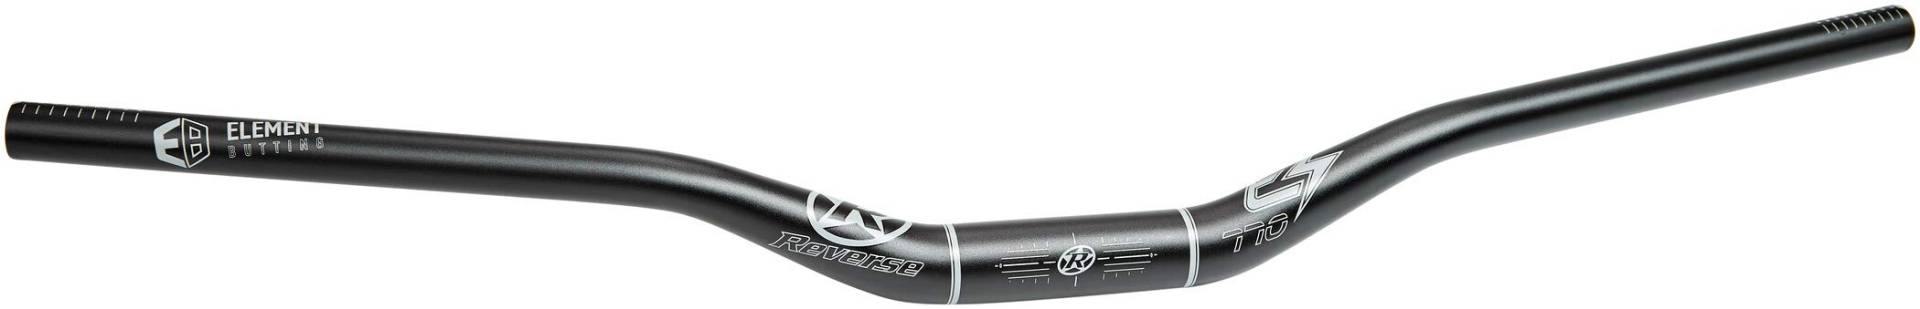 Reverse E-Element Ergo Fahrrad Lenker 31.8mm schwarz/grau: Größe: 31.8mm 25mm Rise 770mm von Reverse